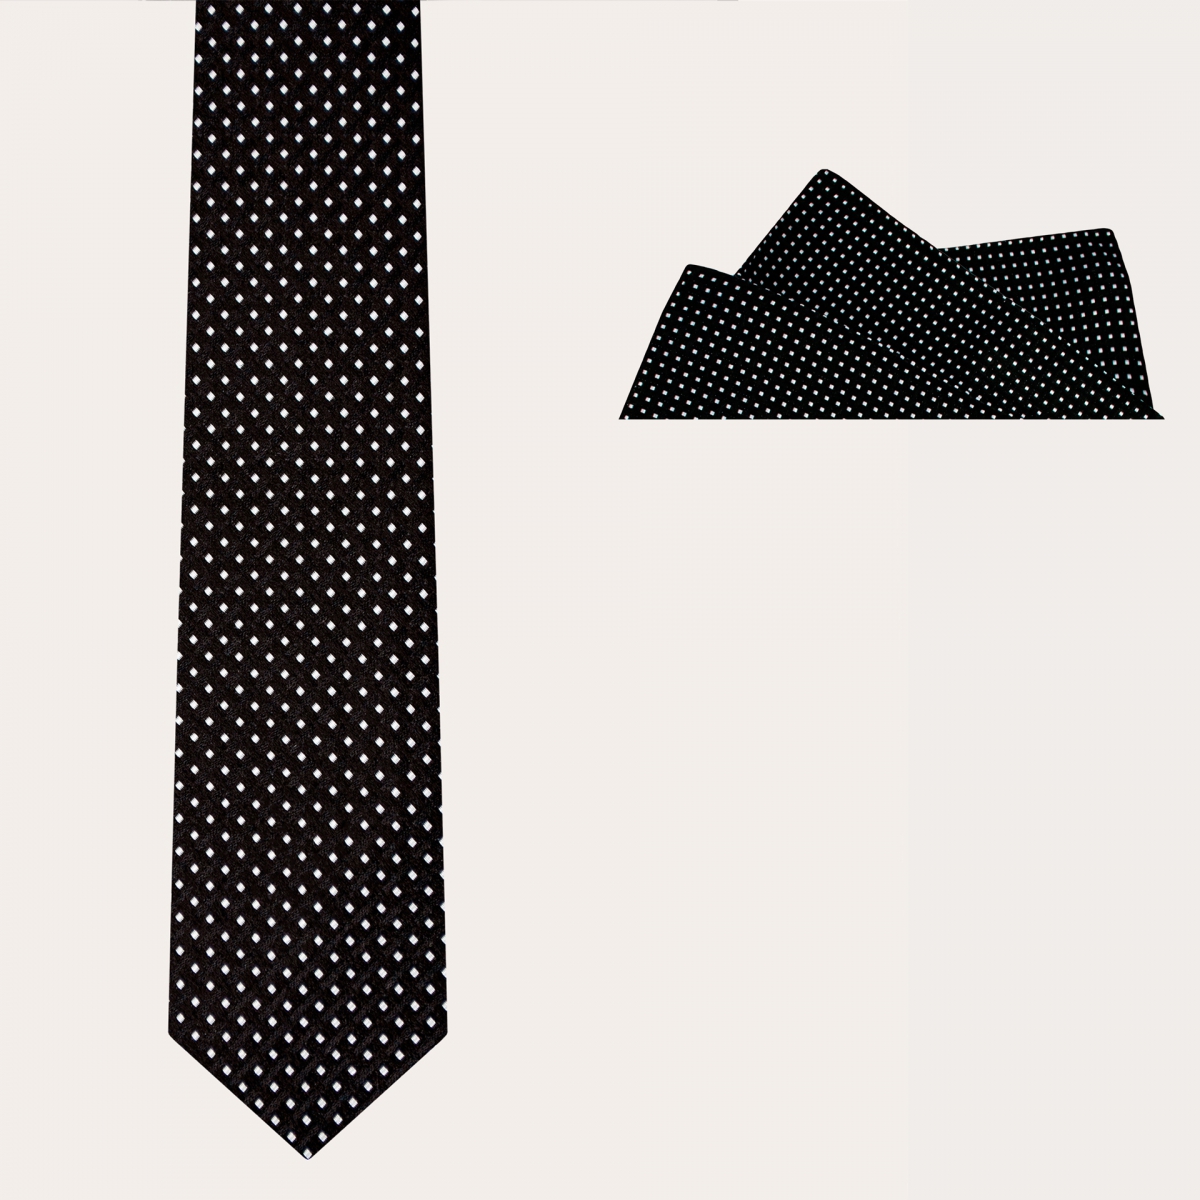 BRUCLE Ceremony Set Krawatte und Einstecktuch, schwarz mit geometrischem Punktmuster